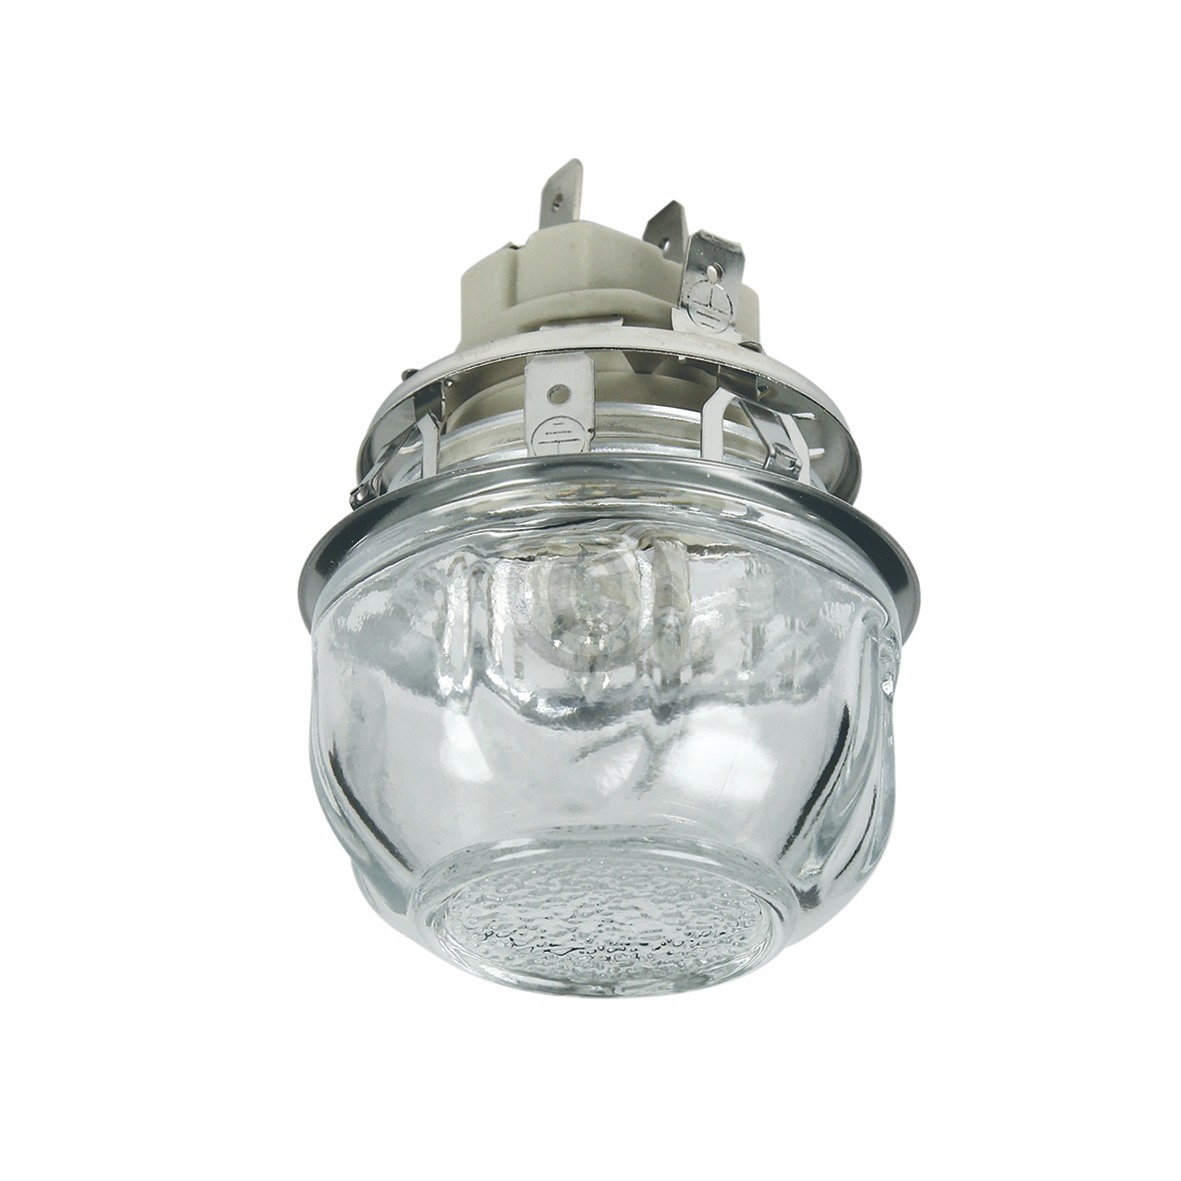 Lampeneinheit Electrolux 387937693/1 Fassung Lampe Glashaube für Backofen